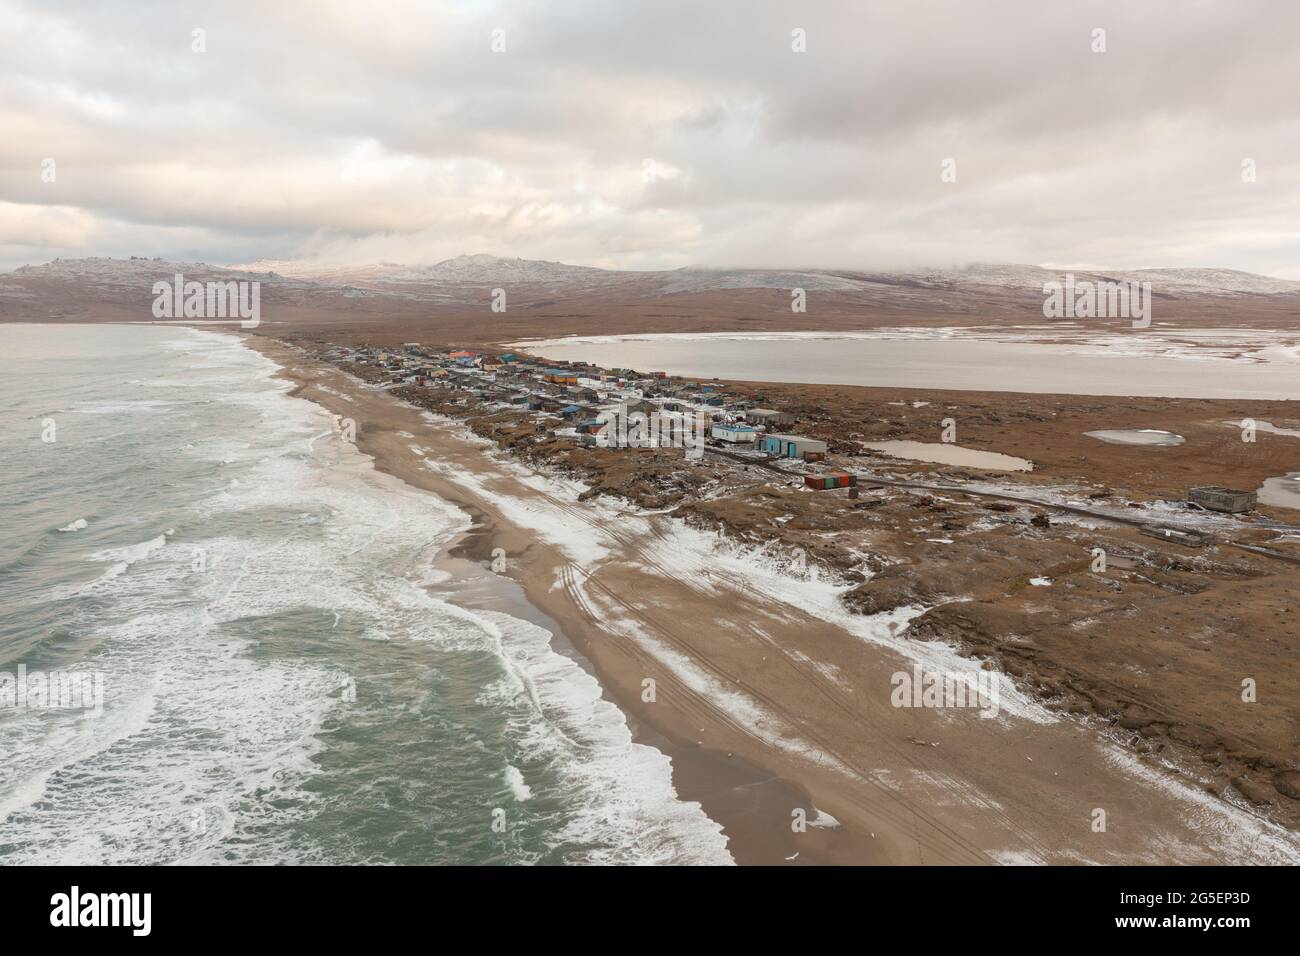 Enurmino, Tschukotka autonomer Bezirk, Russland - 14. Oktober 2020: Nördliches Dorf am Ufer des Tschuktschen Meeres. Stockfoto